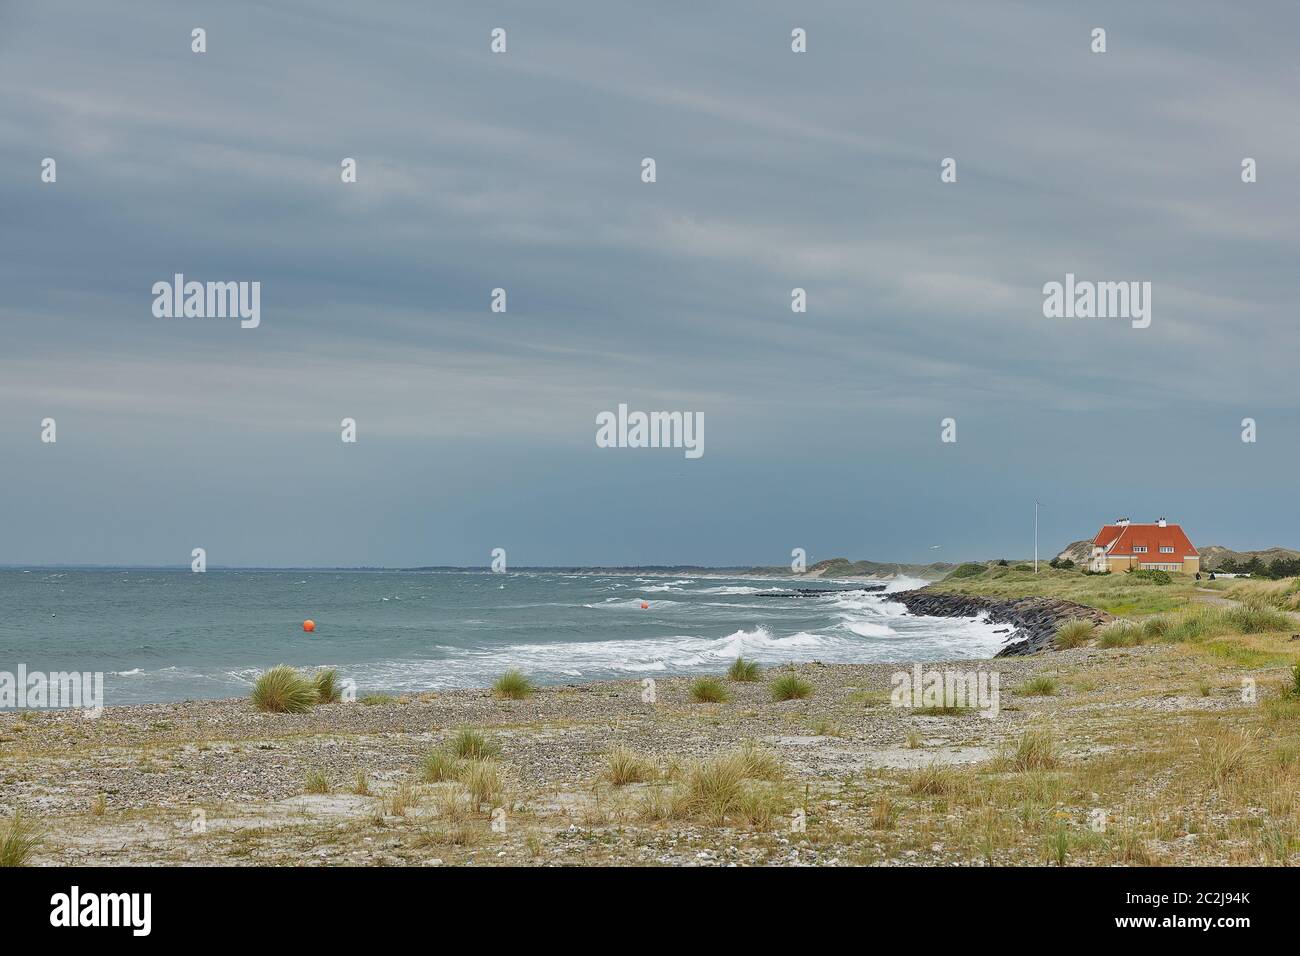 Bord de mer et paysage près de la ville de Skagen au Danemark Banque D'Images